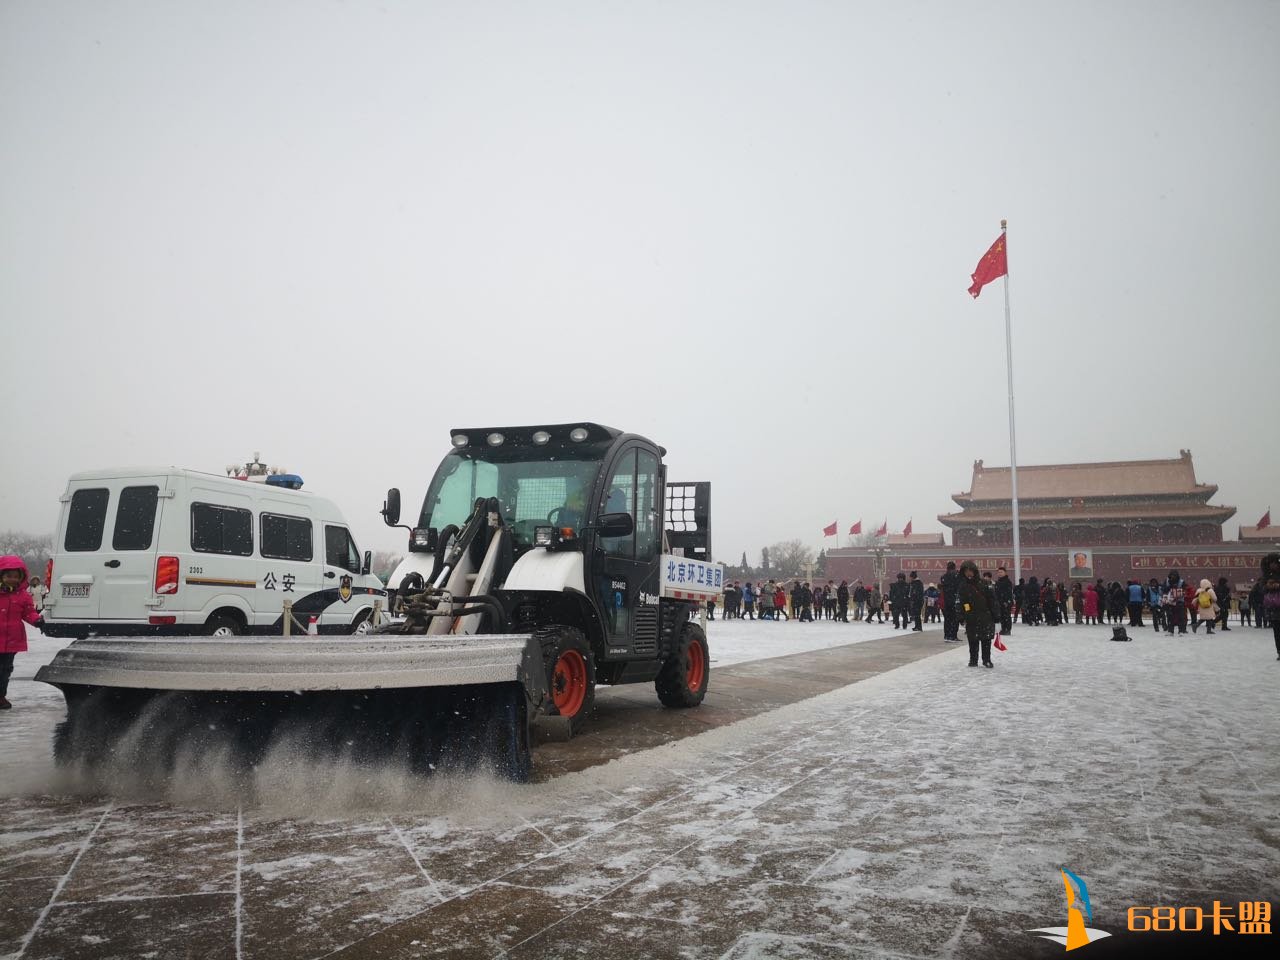 和平精英辅助sxxiu北京环卫全力扫雪铲冰 目前无路面积雪和结冰现象